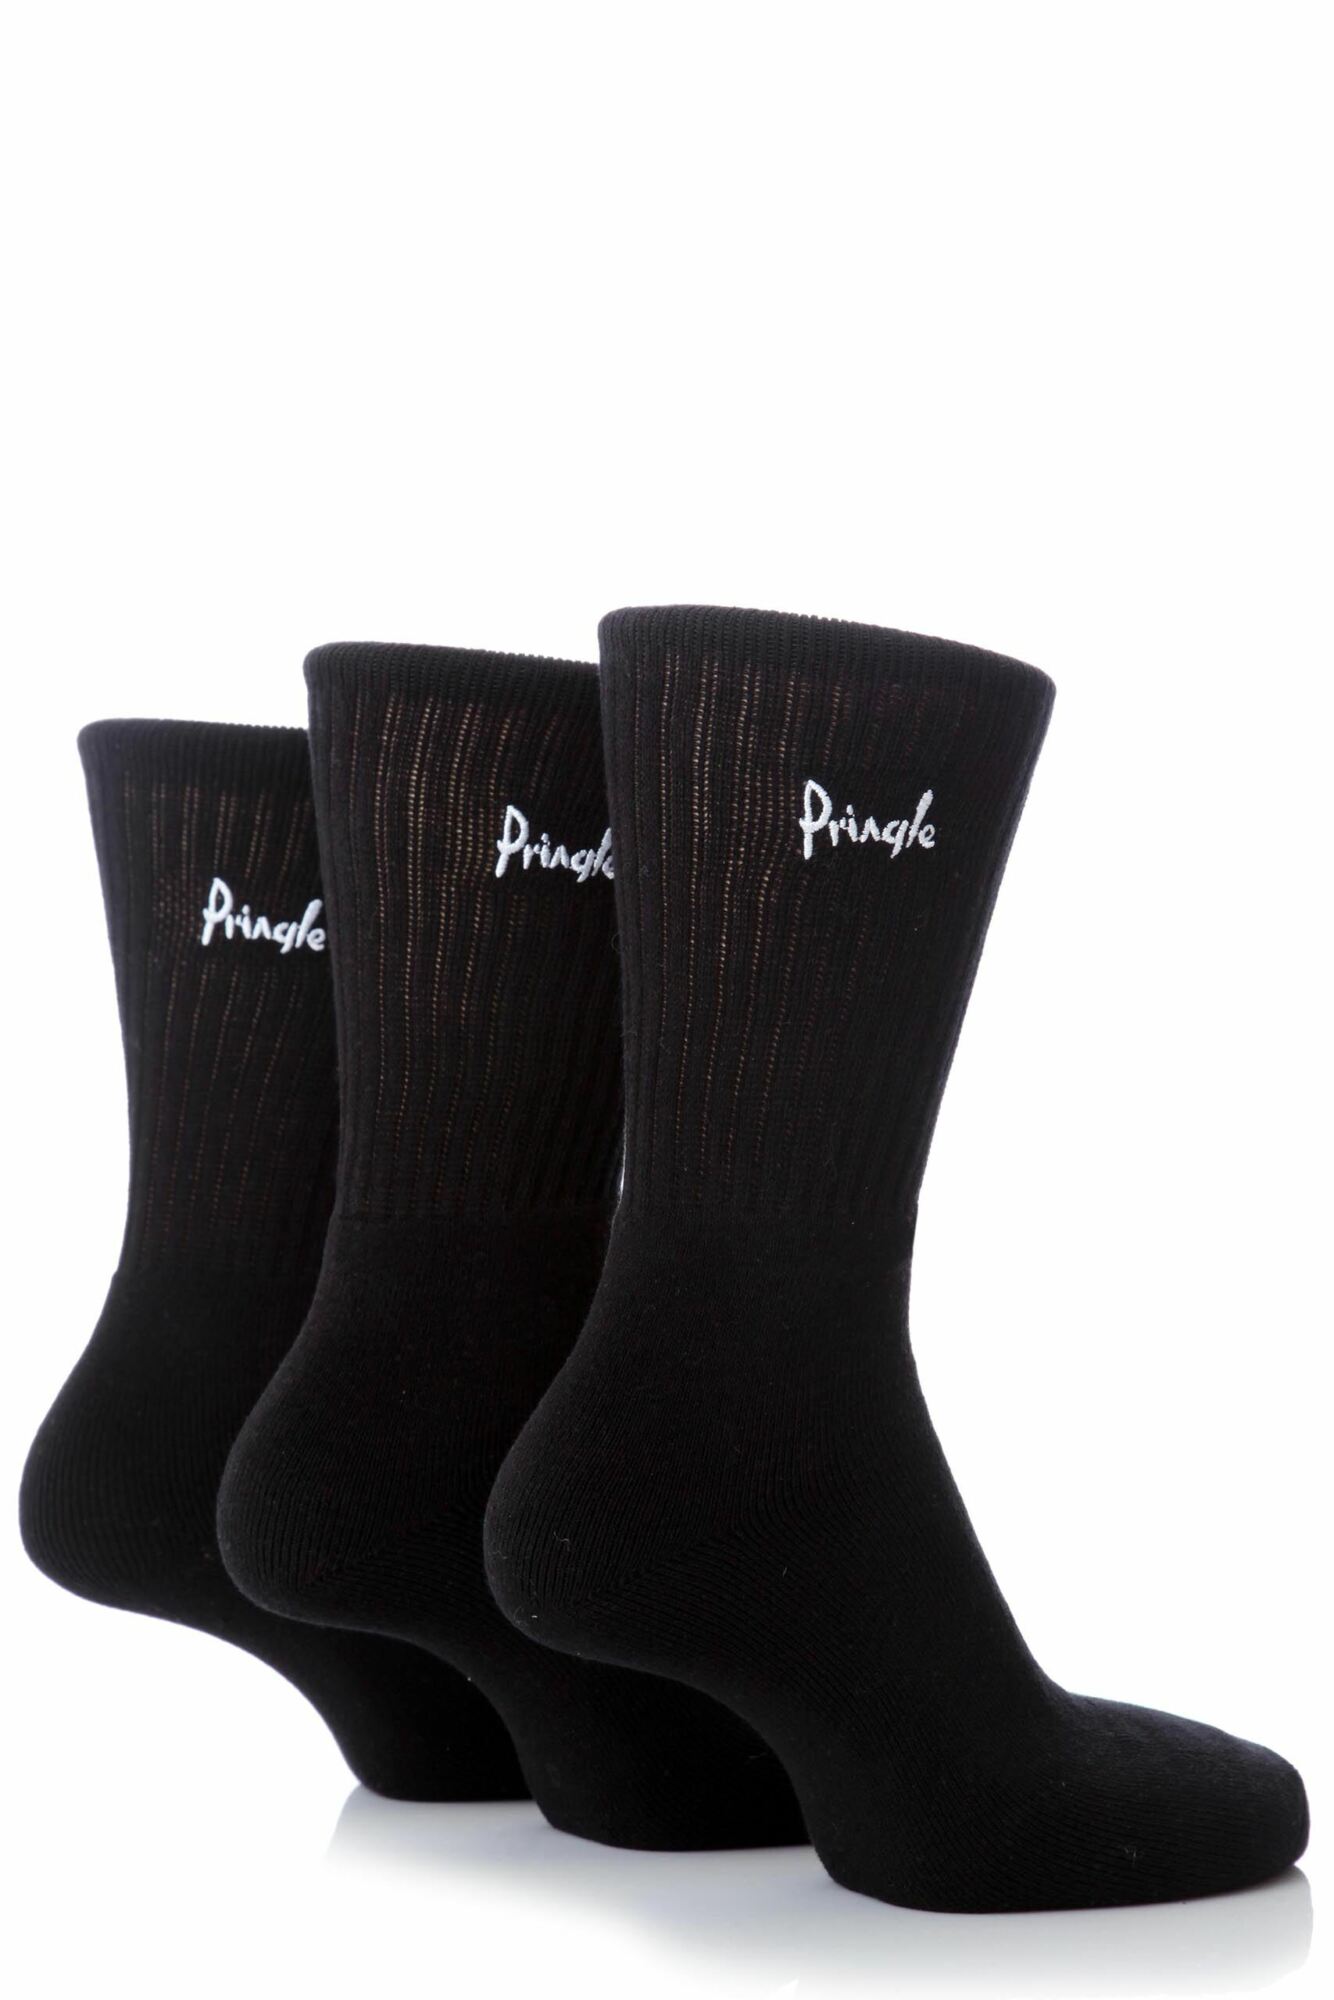 3 Pair Cotton Cushion Sports Socks Men's - Pringle